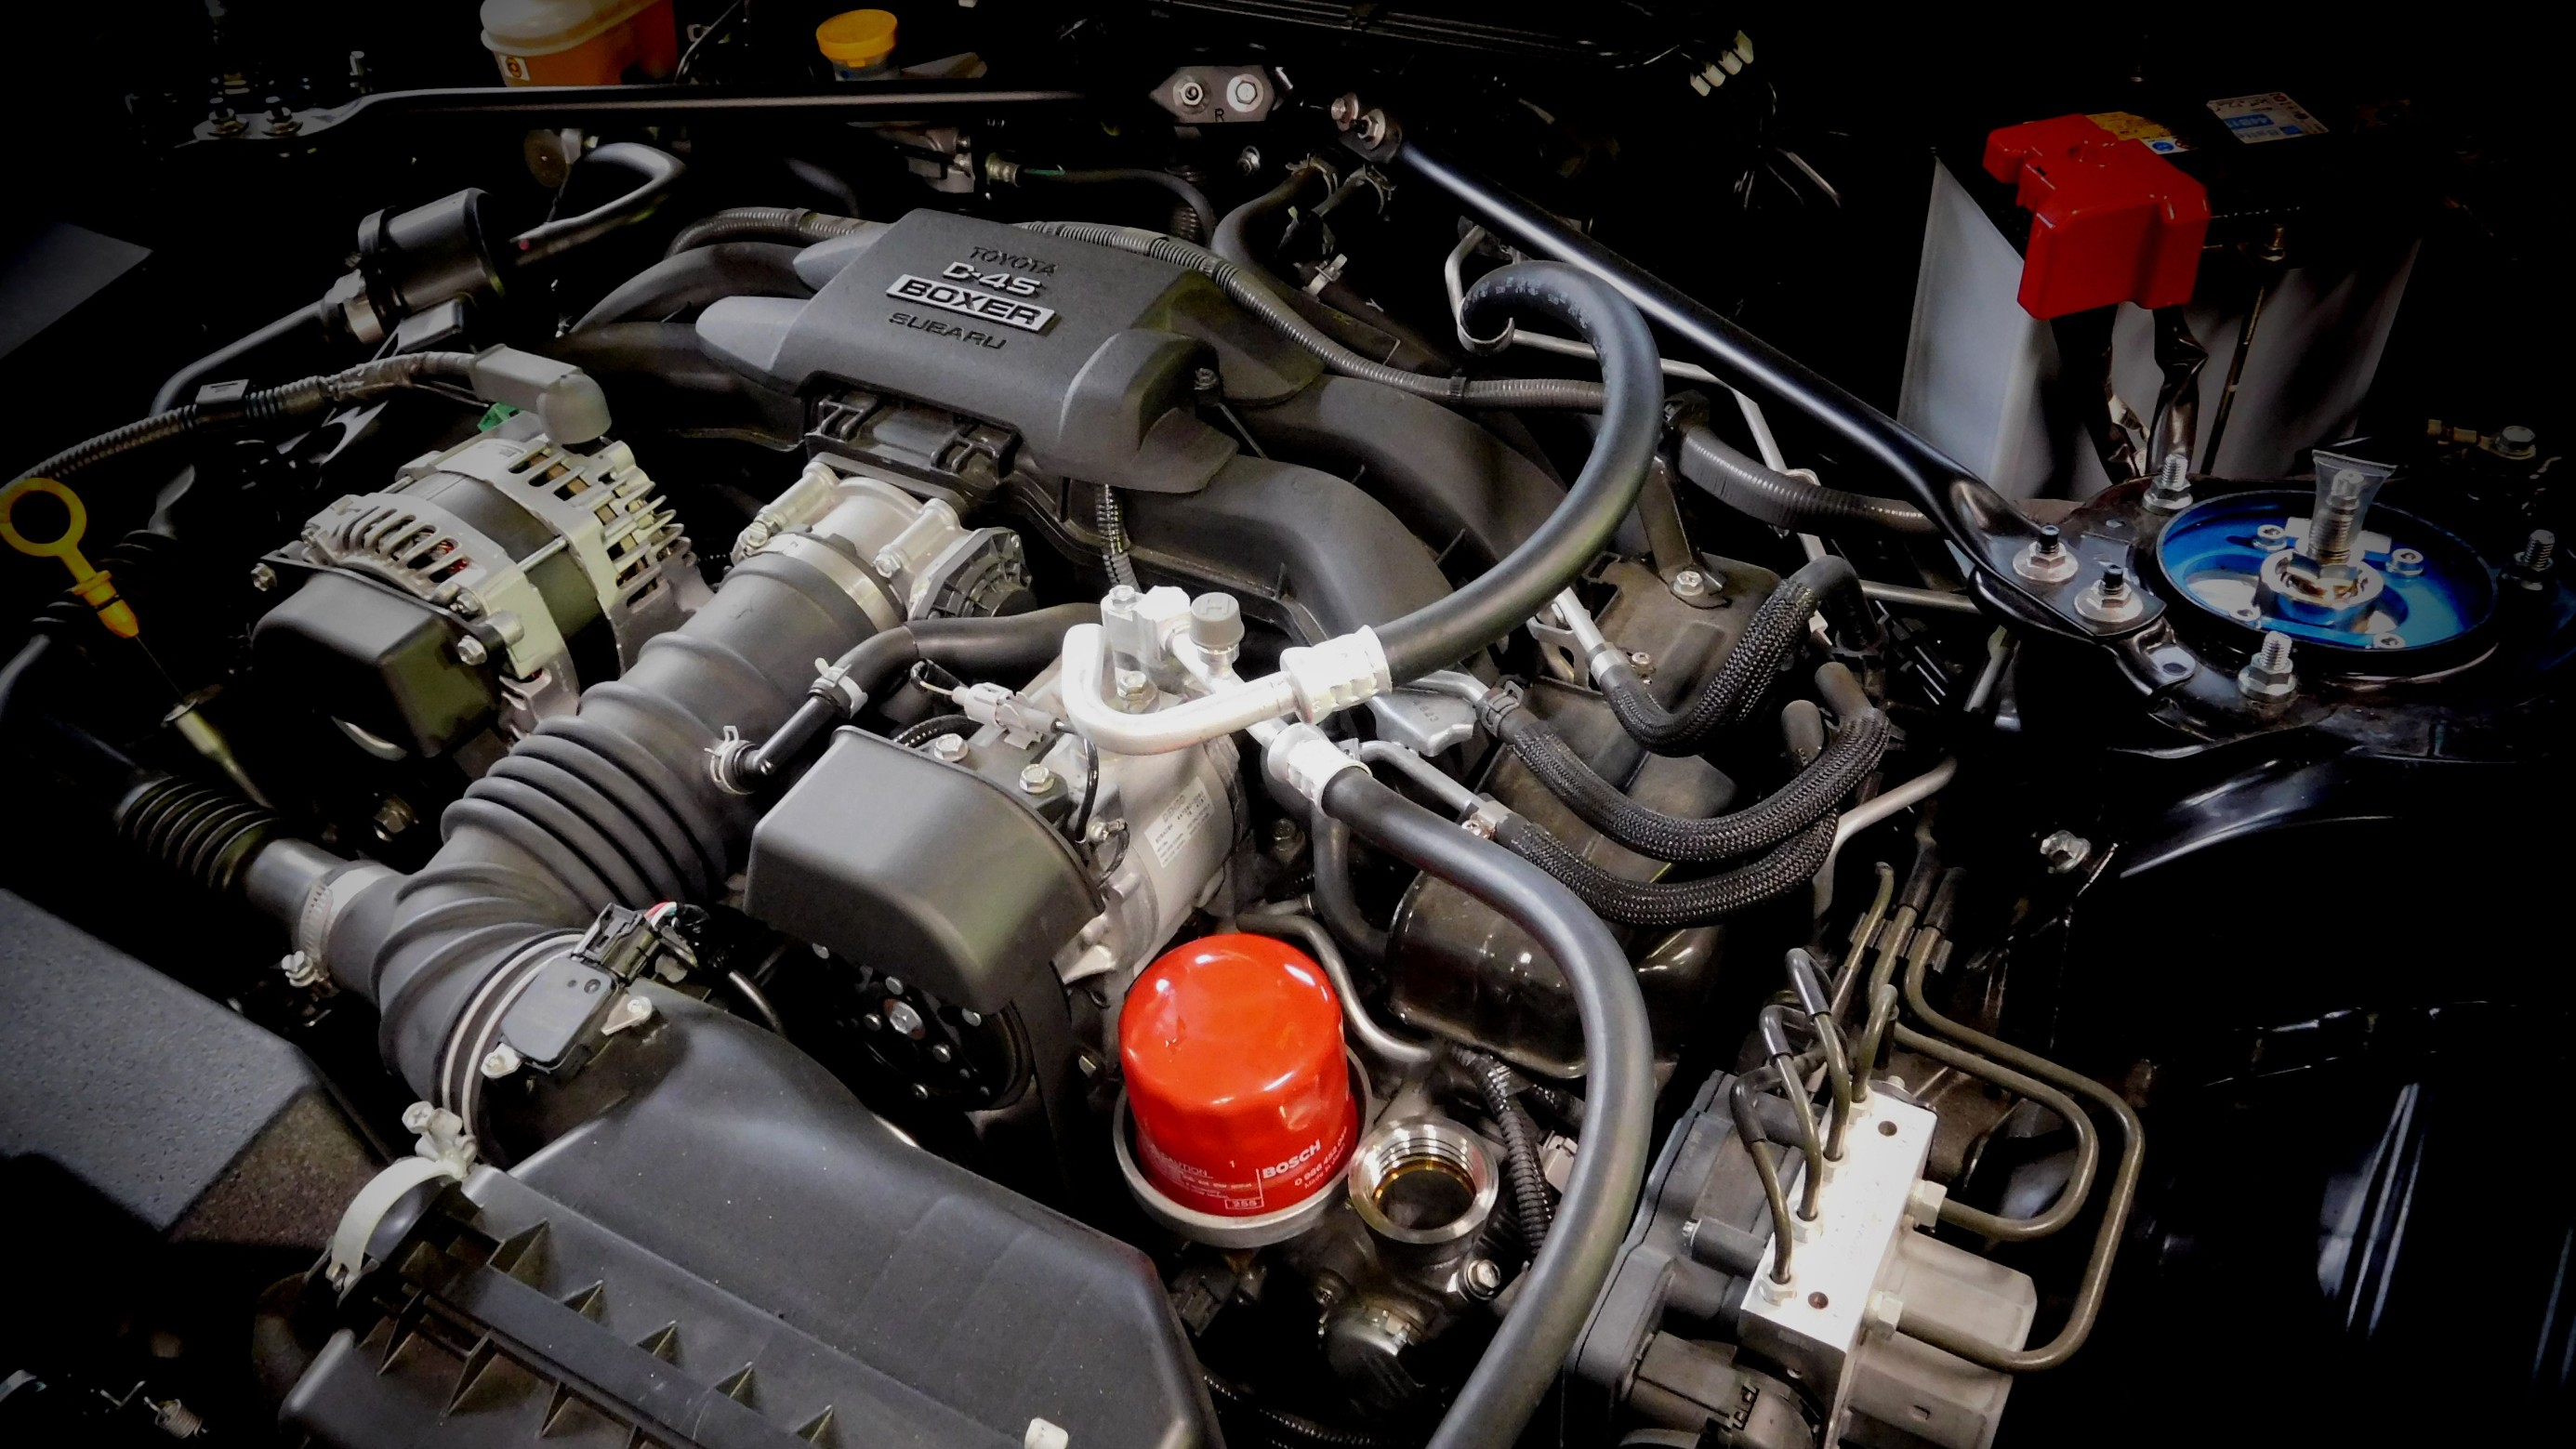 トヨタ 86 Zn6 エンジンオイル オイルフィルター交換 Power Cluster パワークラスター トヨタ 86 メンテナンス オイル バッテリー他 メンテナンス オイル バッテリー他 エンジンオイル交換 フィールの日記 スタイルコクピット フィール 車の